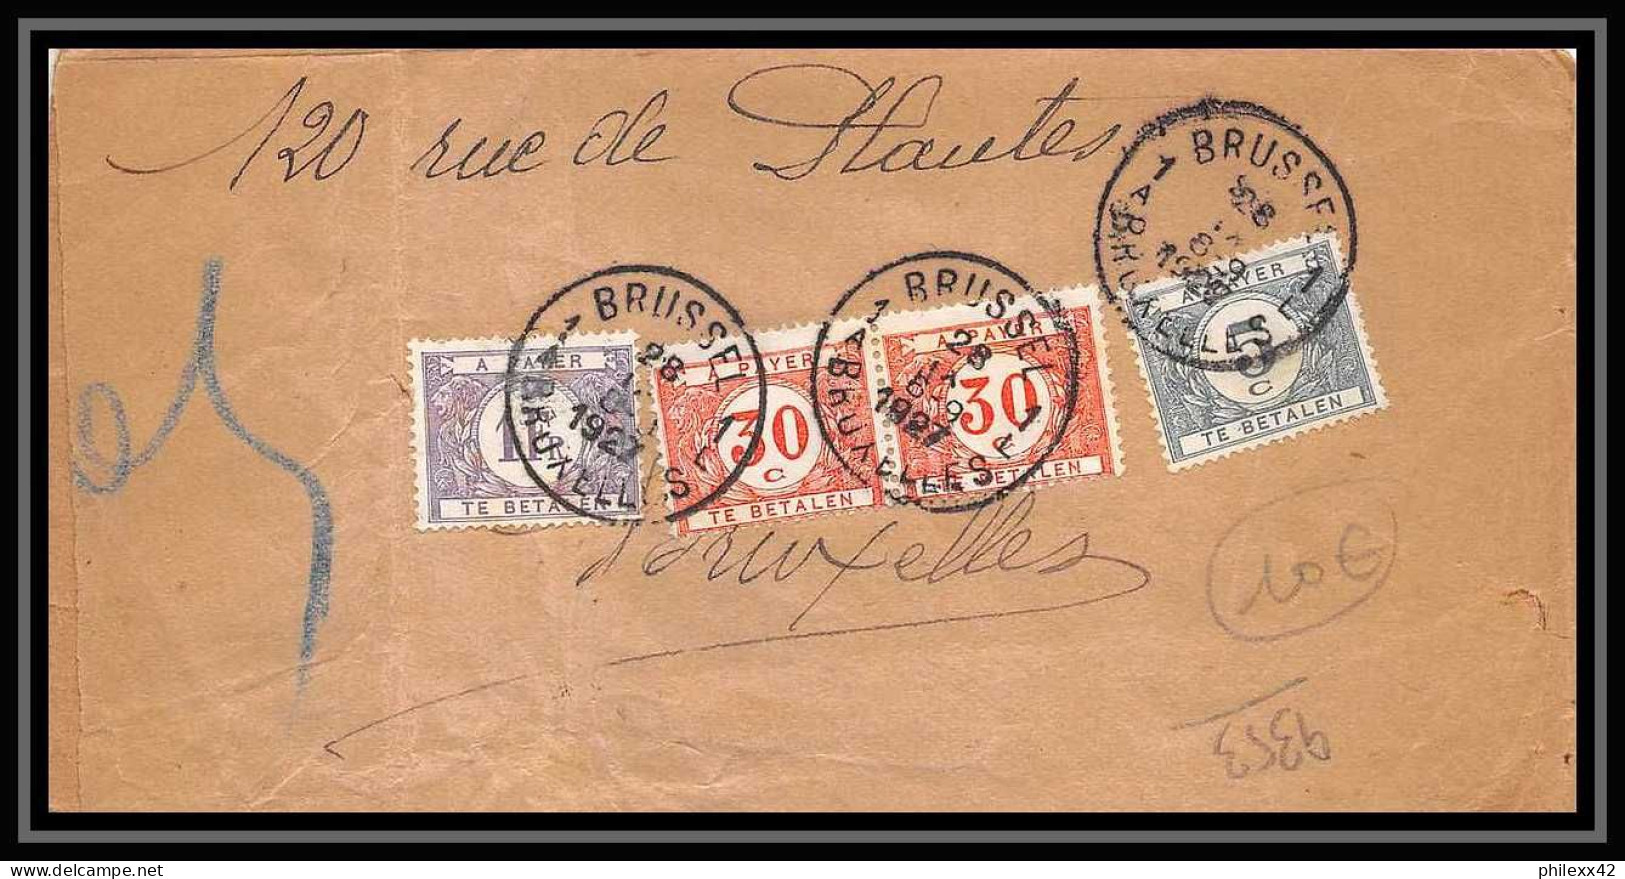 9353 Taxe N°223 Semeuse 50c Paris Bruxelles 1927 Belgique France Lettre Partielle Cover - 1859-1959 Covers & Documents